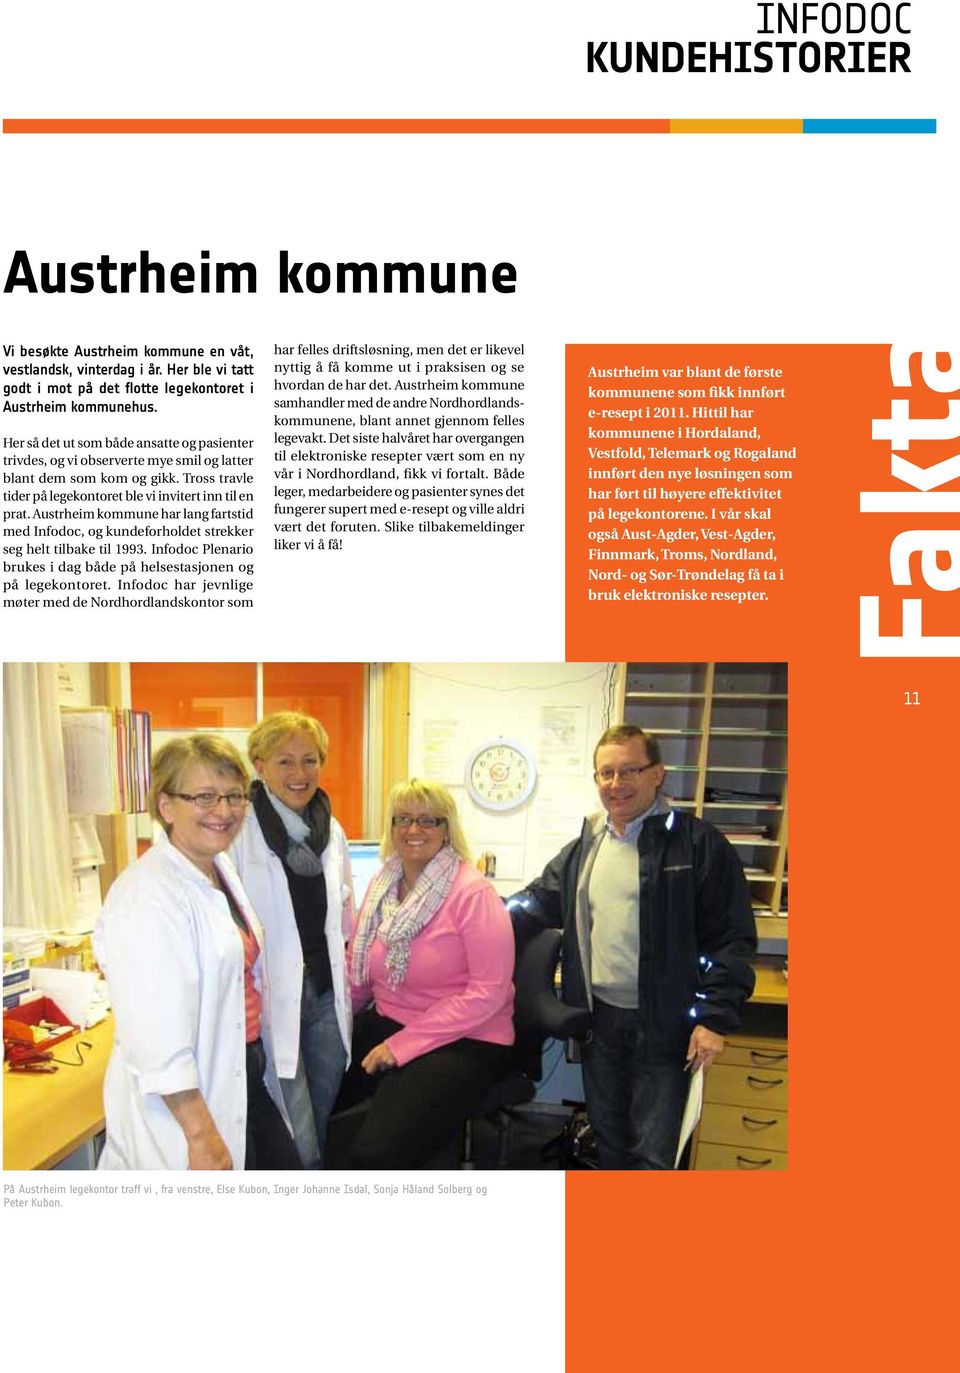 Austrheim kommune har lang fartstid med Infodoc, og kundeforholdet strekker seg helt tilbake til 1993. Infodoc Plenario brukes i dag både på helsestasjonen og på legekontoret.